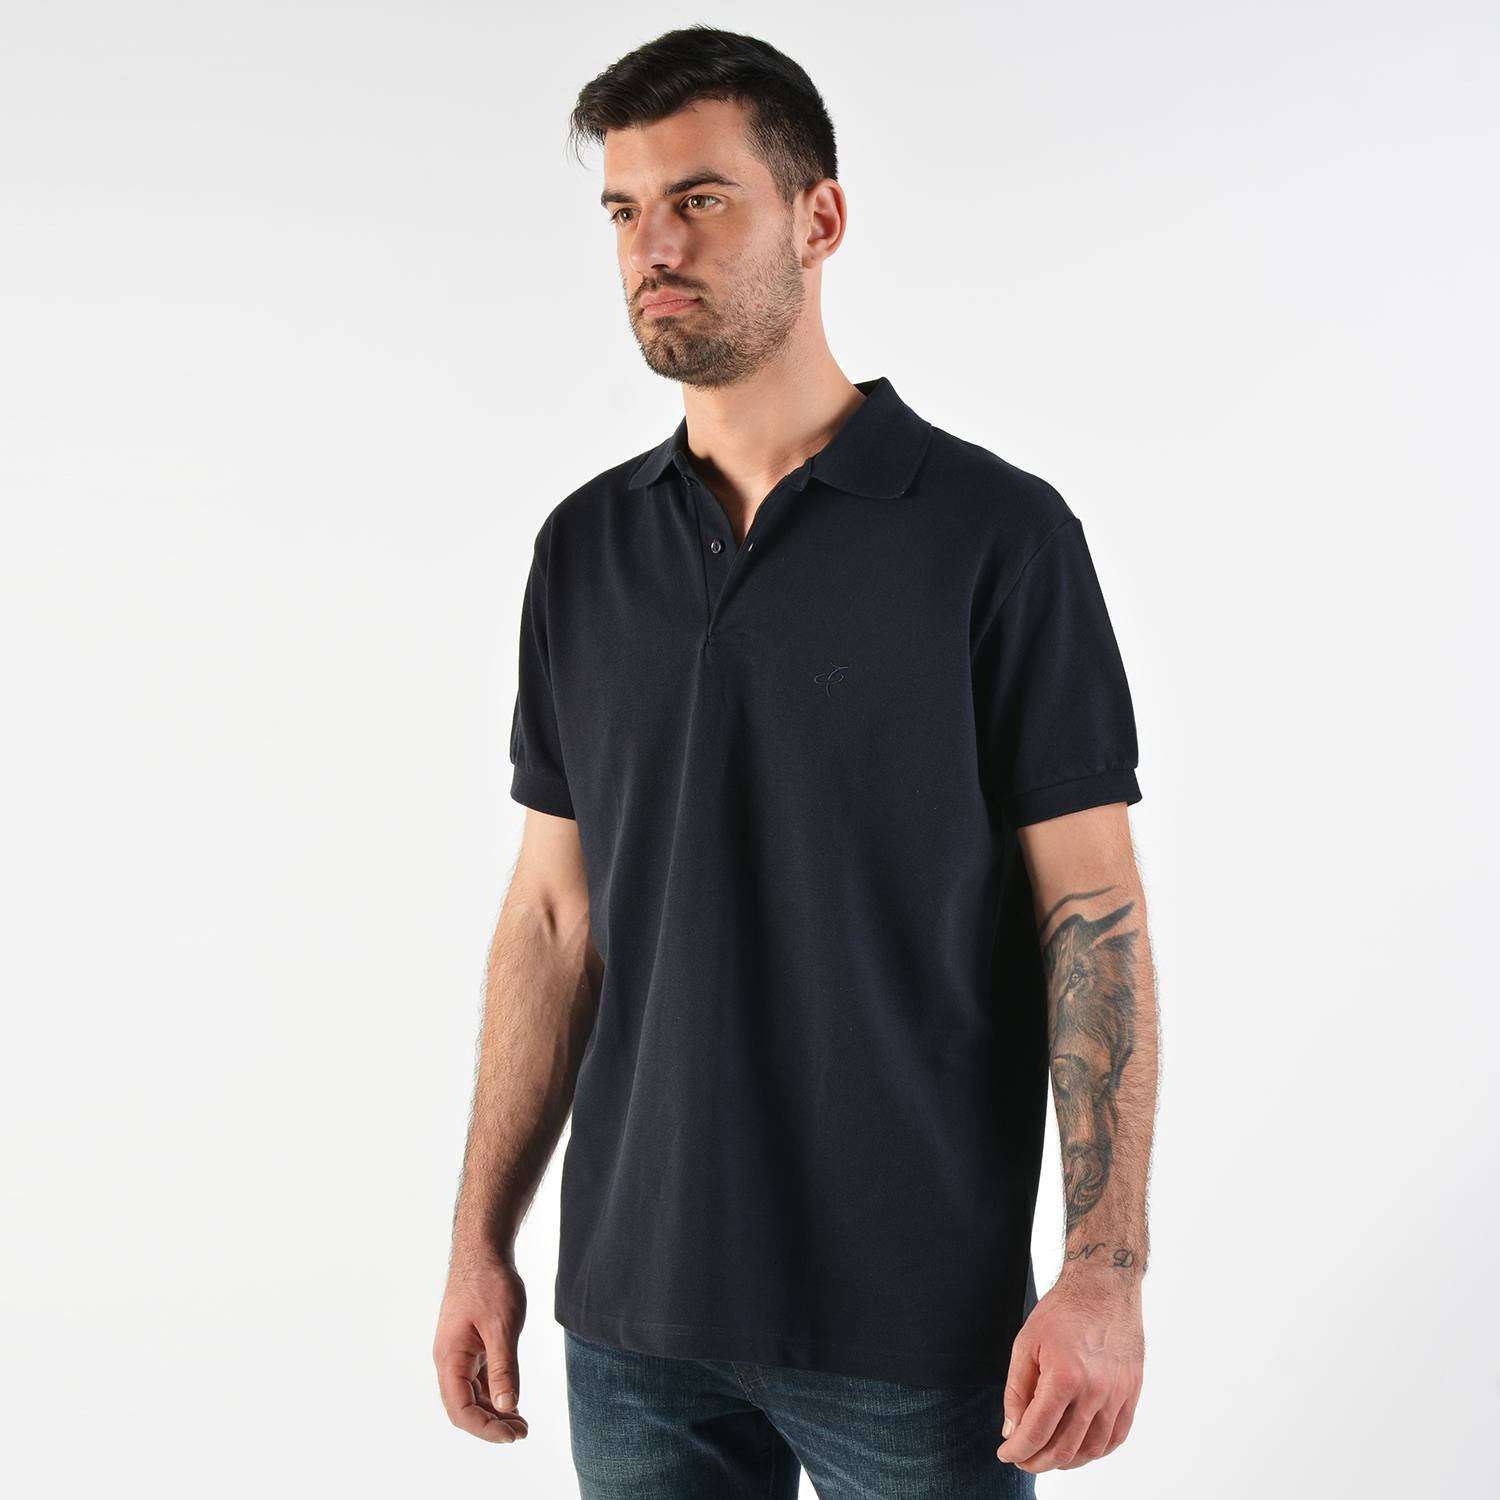 Target Men's Polo T-Shirt - Ανδρική Polo Μπλούζα (9000030015_003)